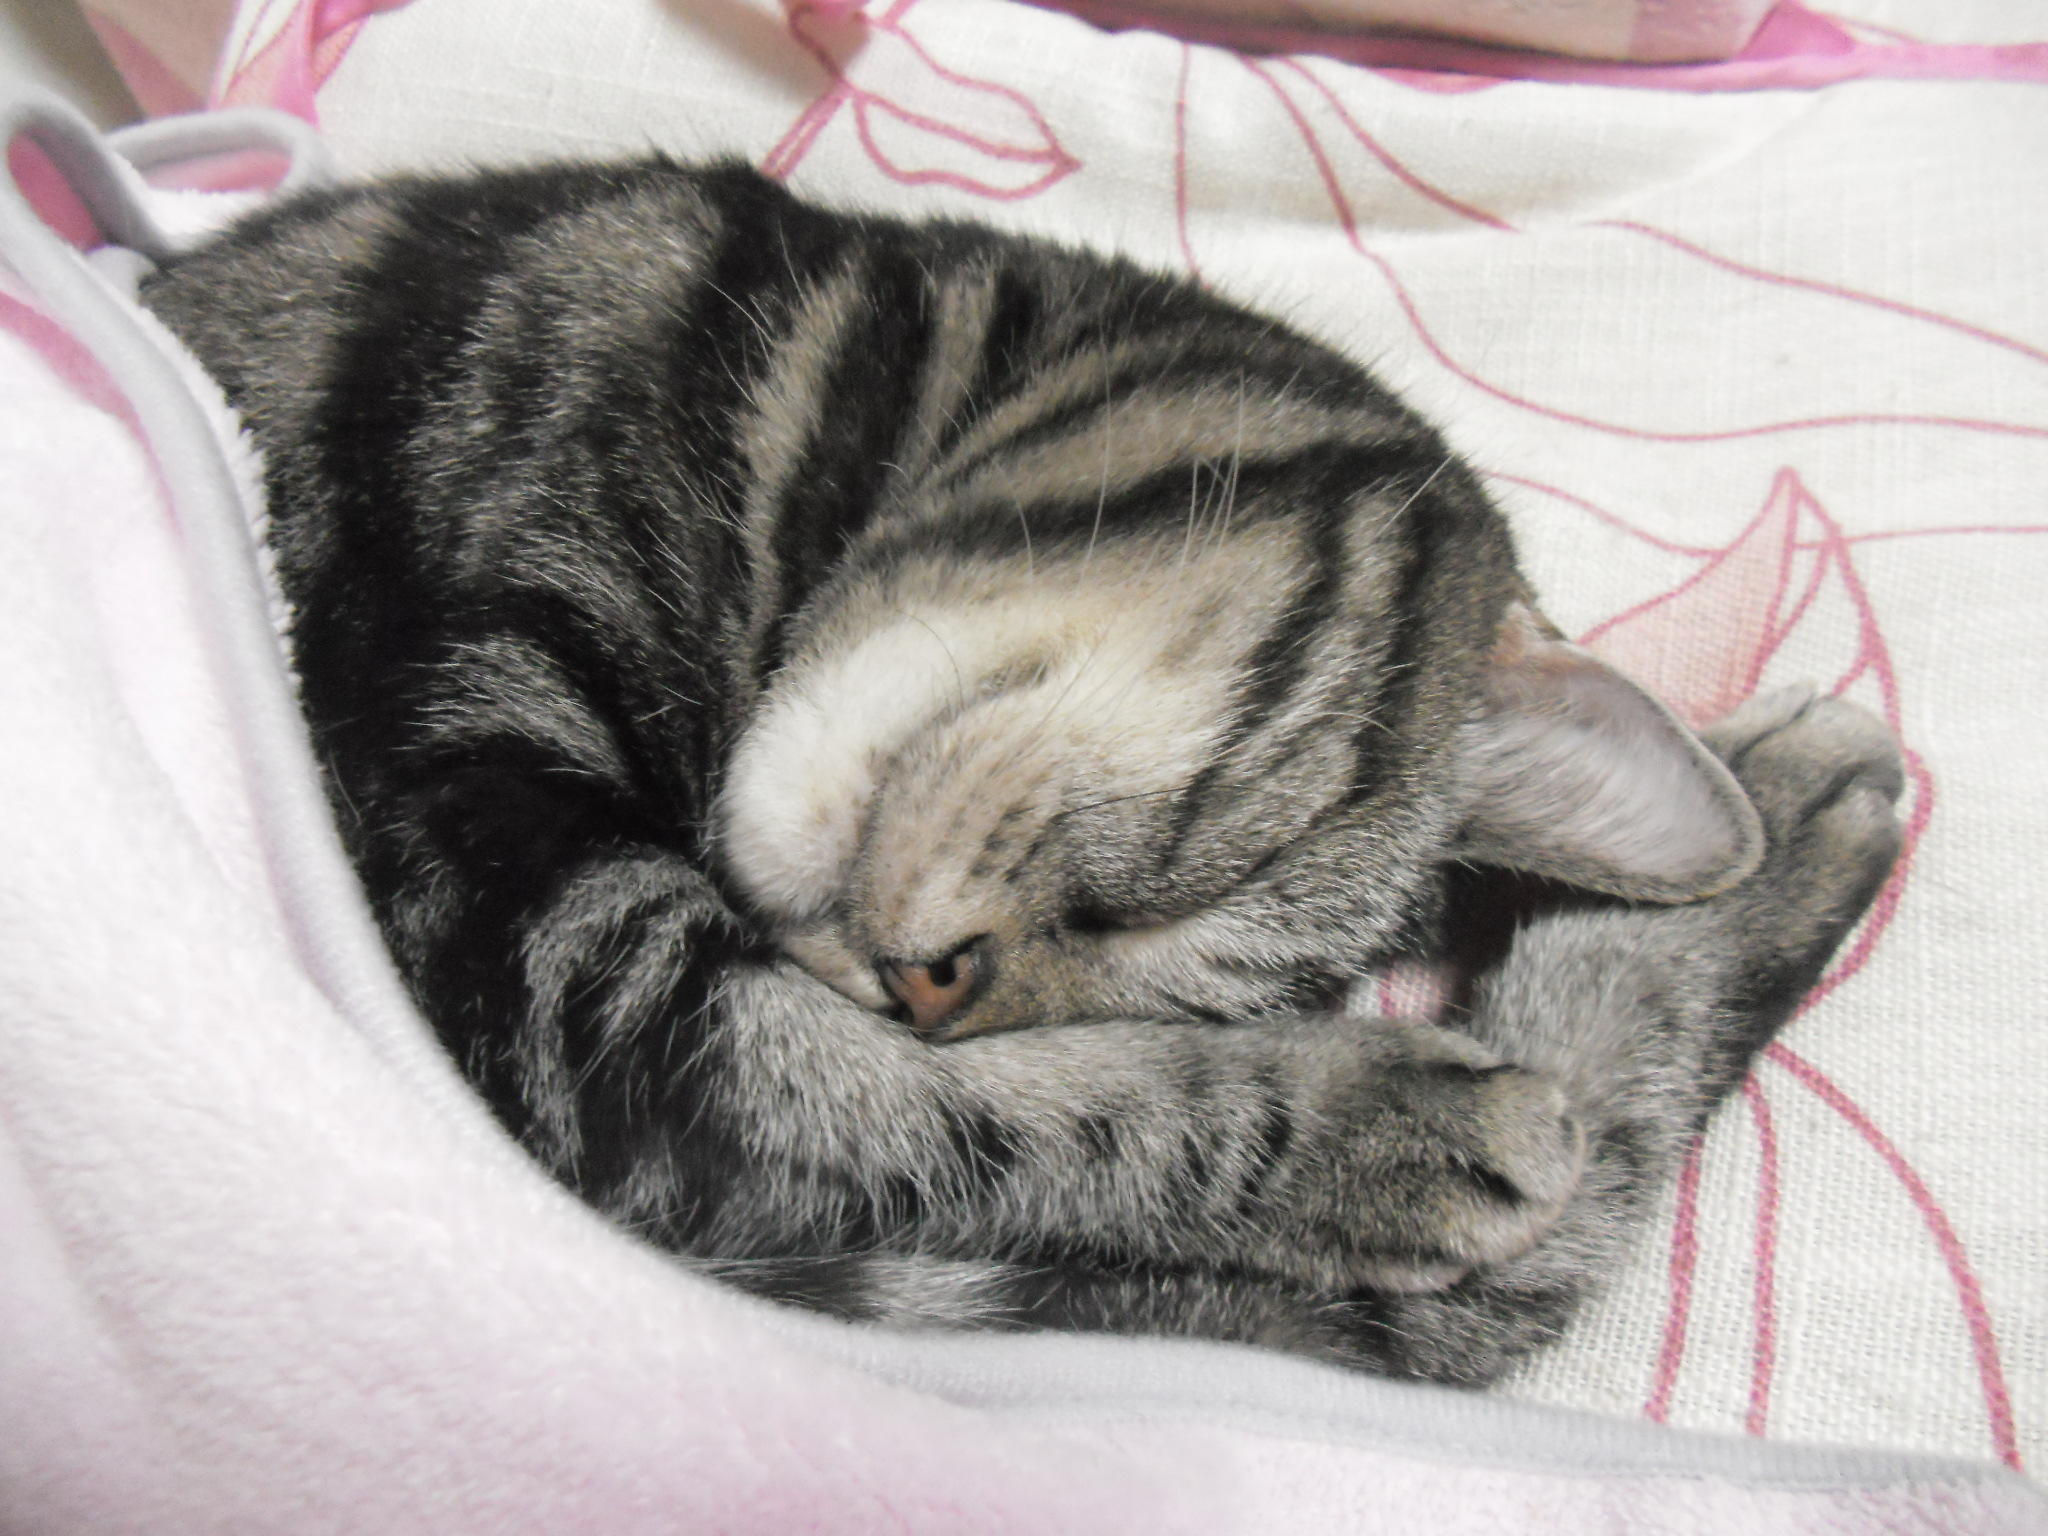 ａｎｇｅｌｃａｔ Kerry 癒され寝顔 ケリーちゃん 毛布掛けても アンモニャイトにゃんこ 猫部 Cat Neko Kerry Http T Co Jcnoyeza